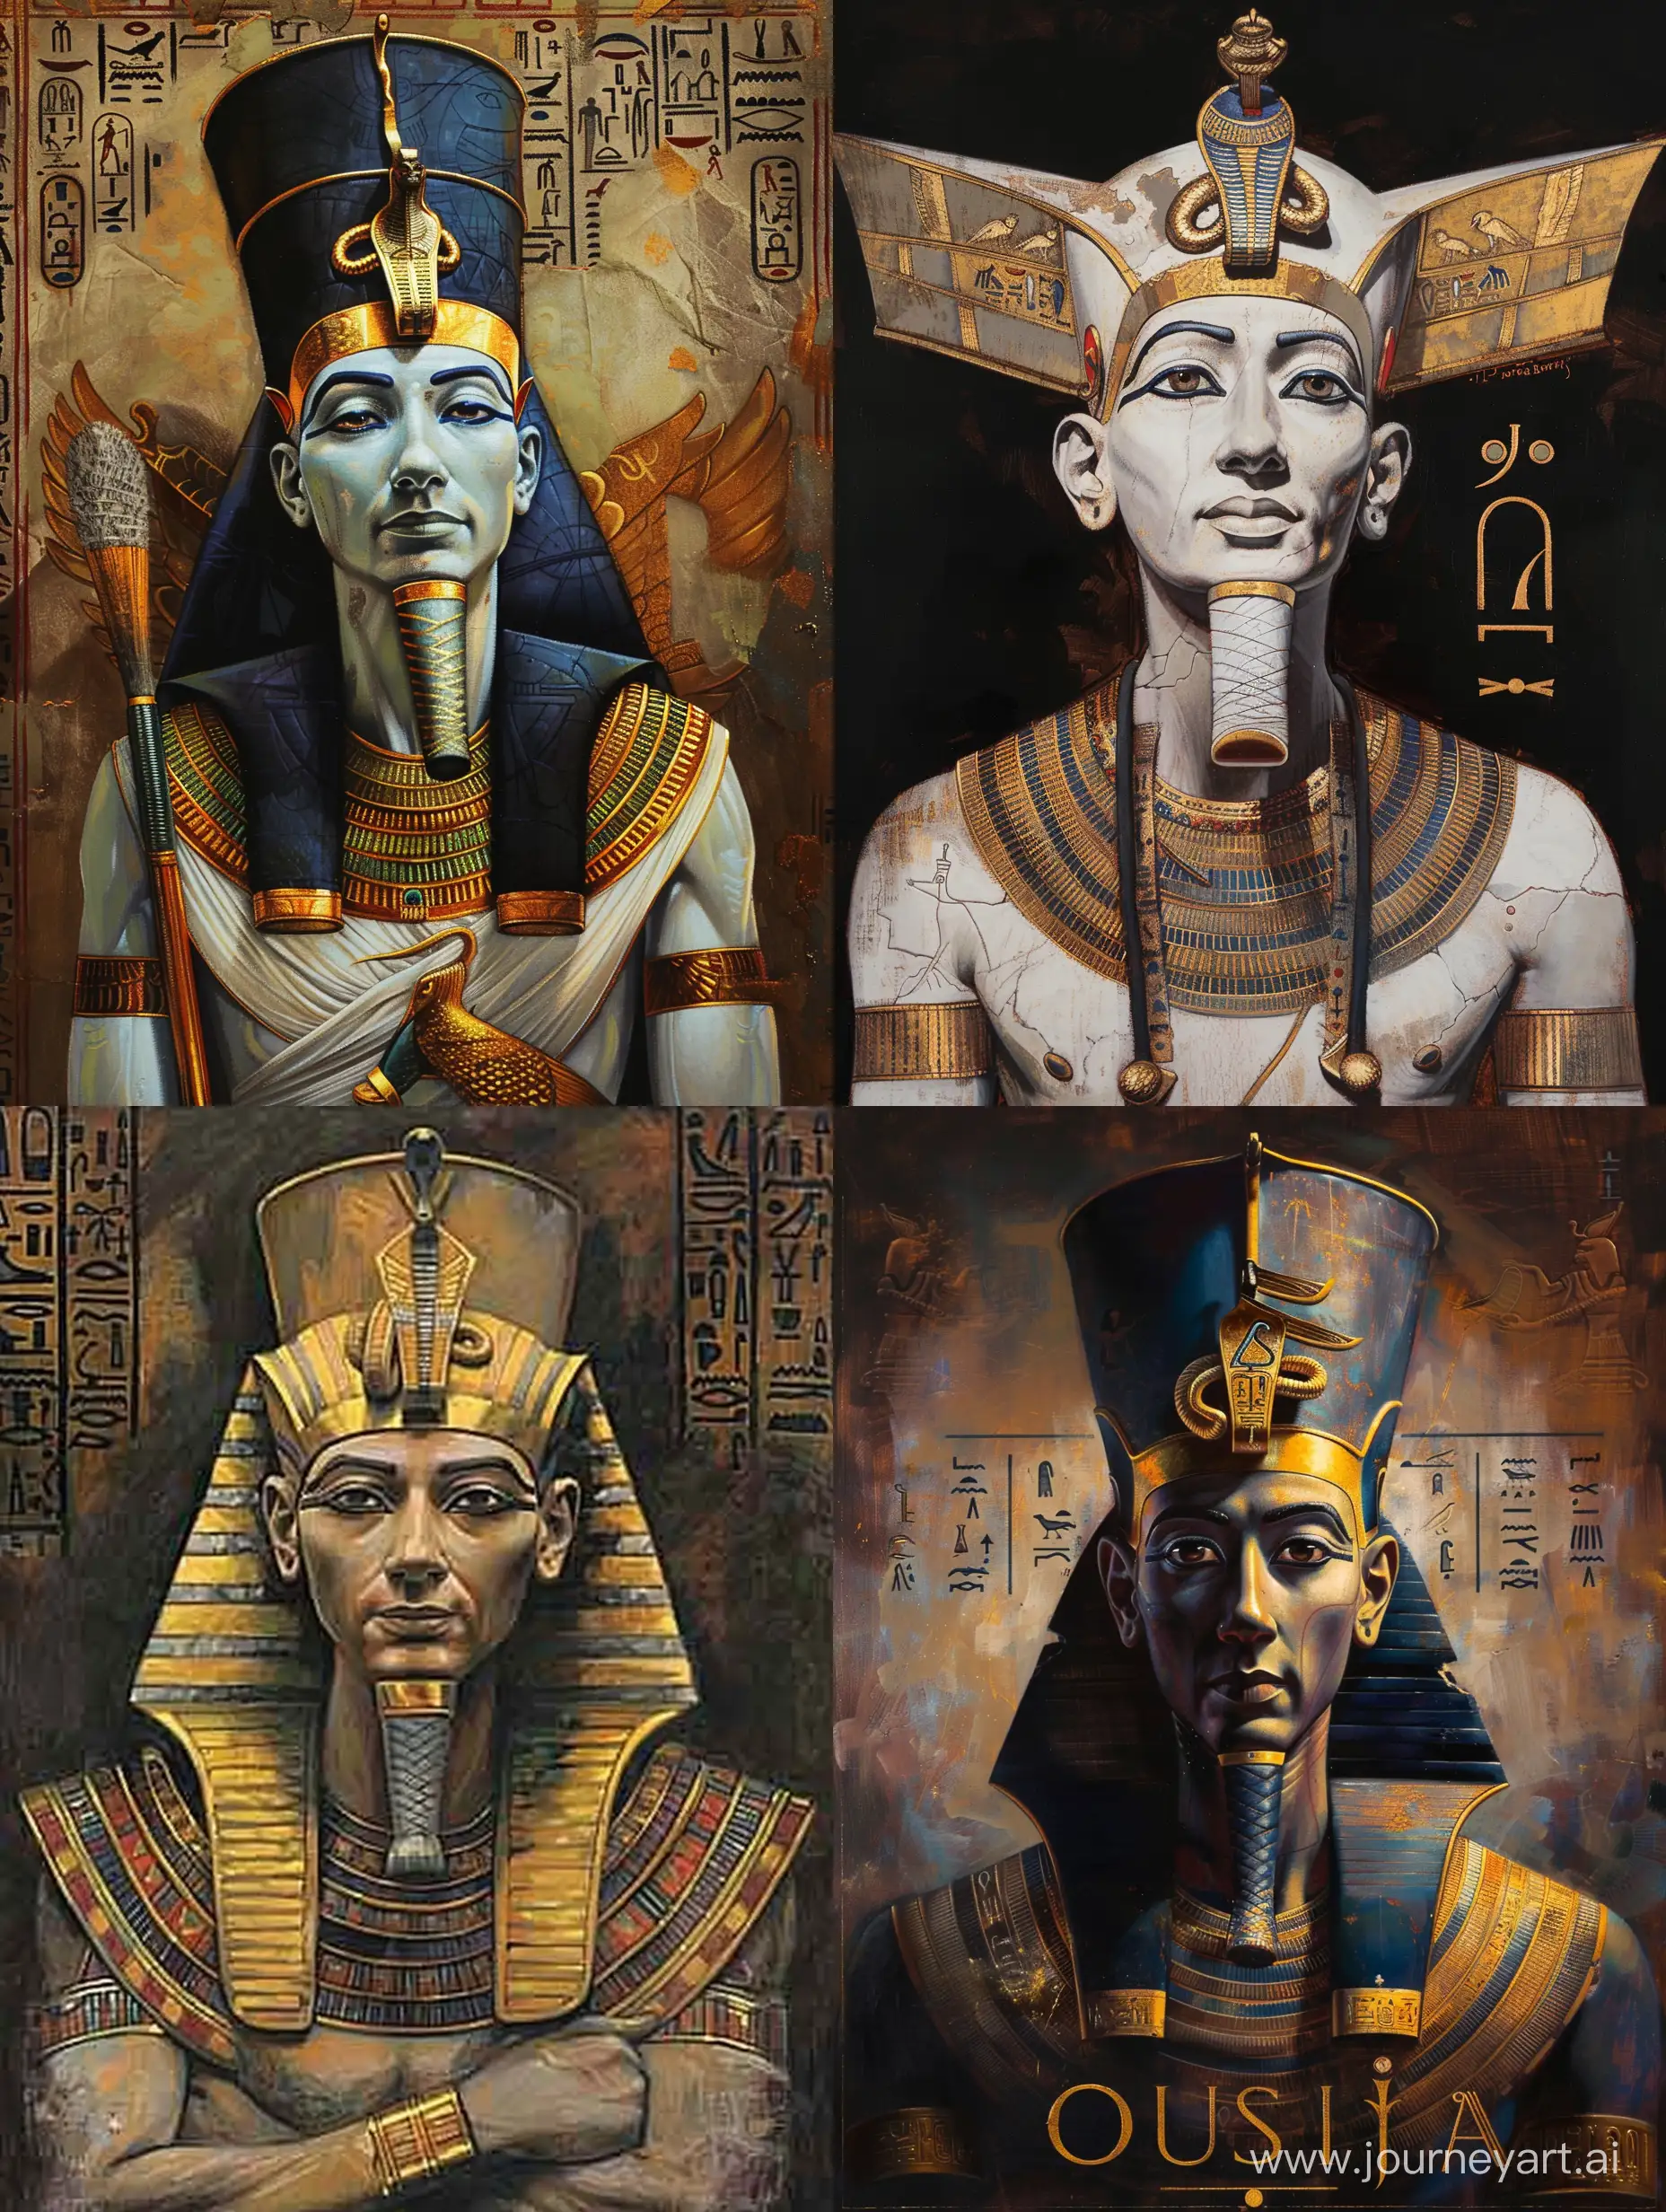 древнеегипетский бог Осирис, золотые украшения, портрет по пояс, масляная живопись, детальная проработка, стилизация, высокое качество, атмосферно